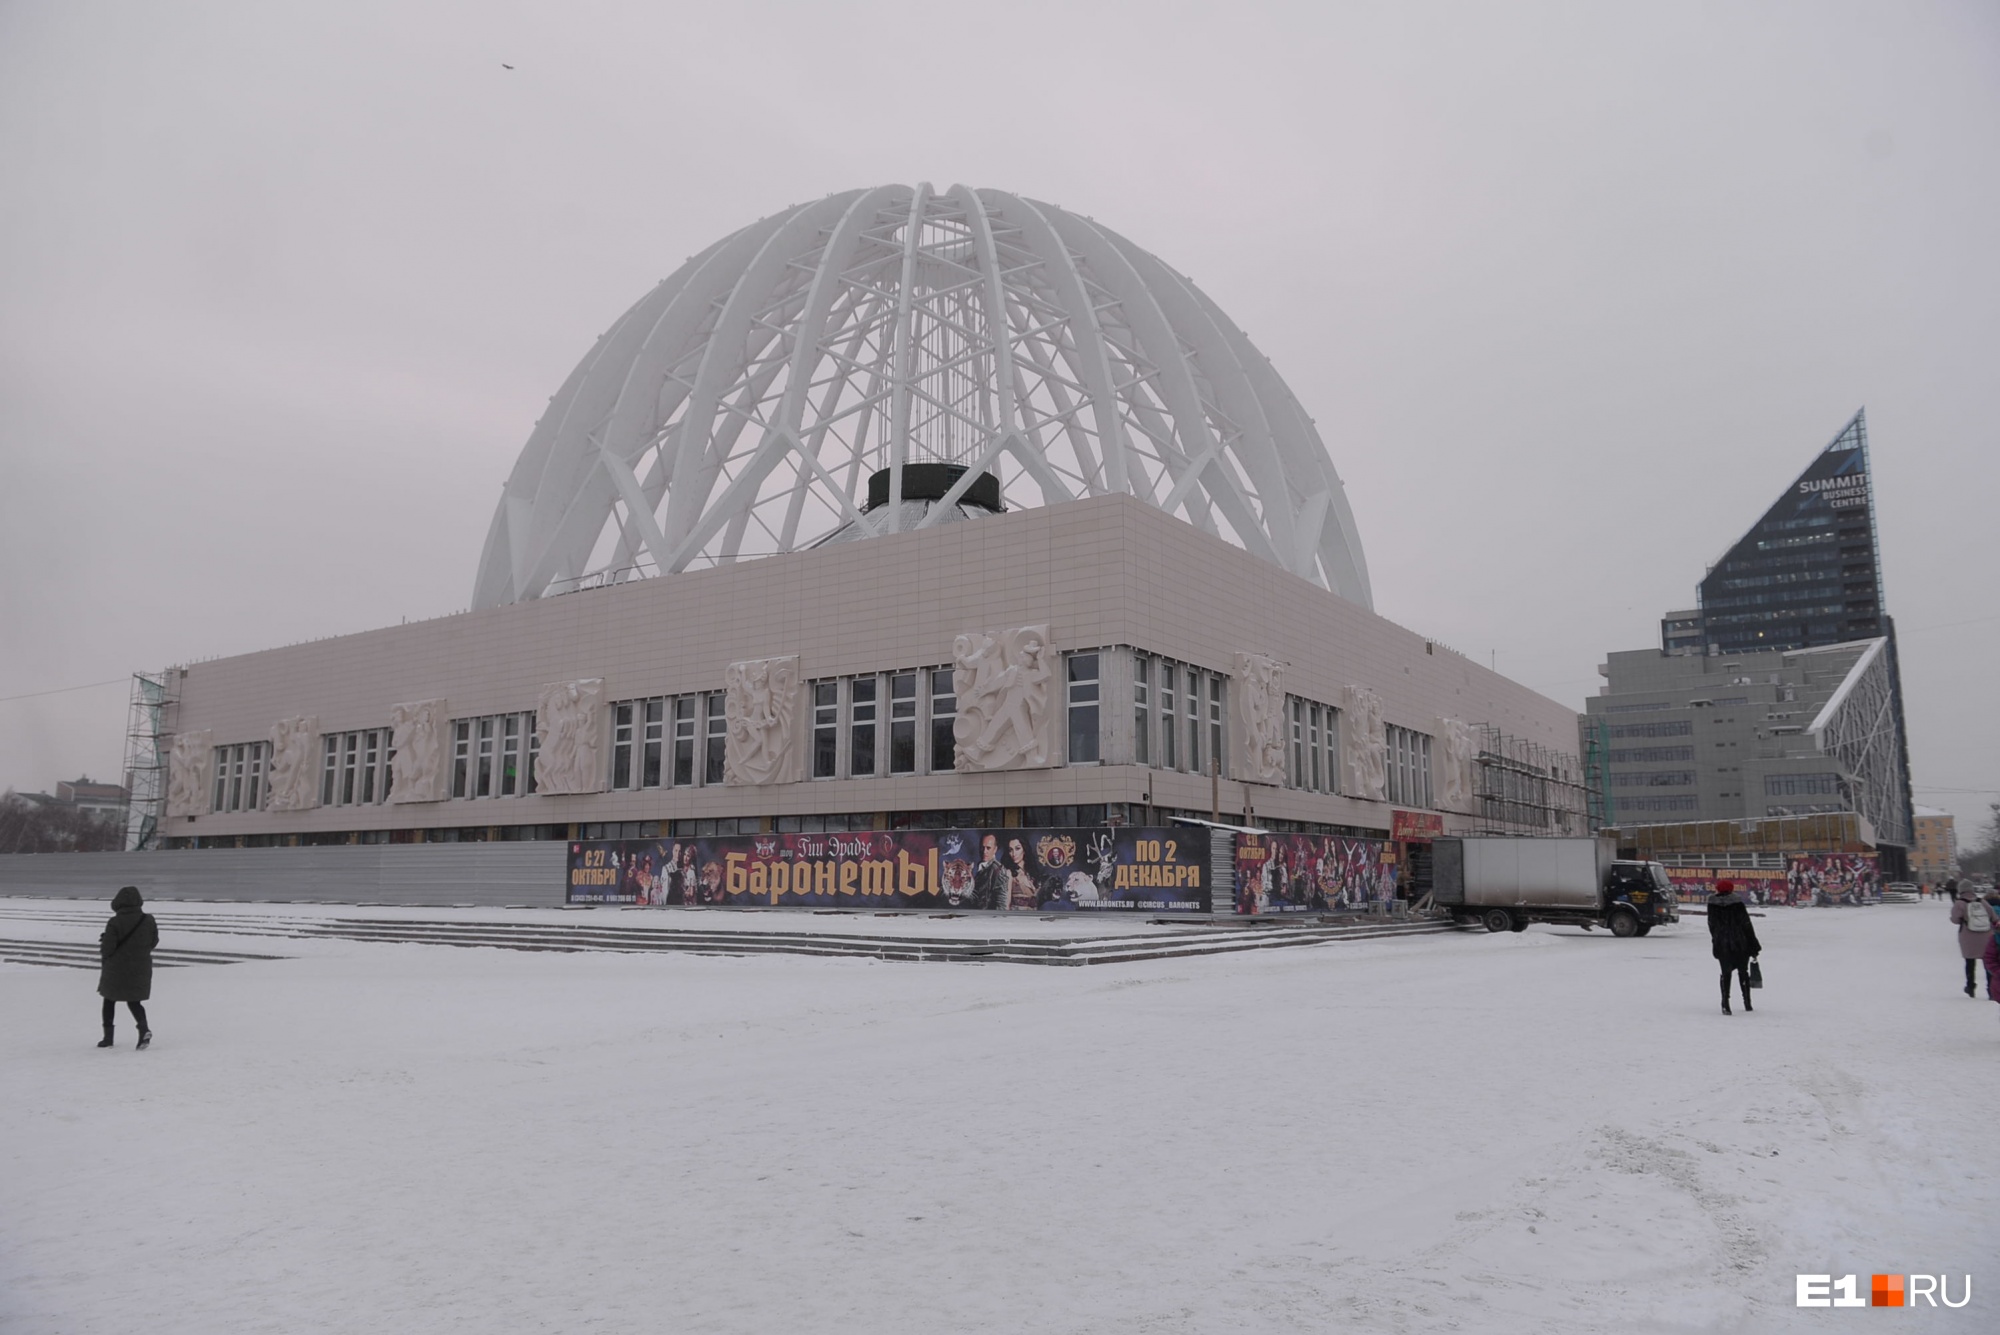 Как изменится екатеринбургский цирк после реконструкции за 2 млрд рублей? Публикуем рендеры